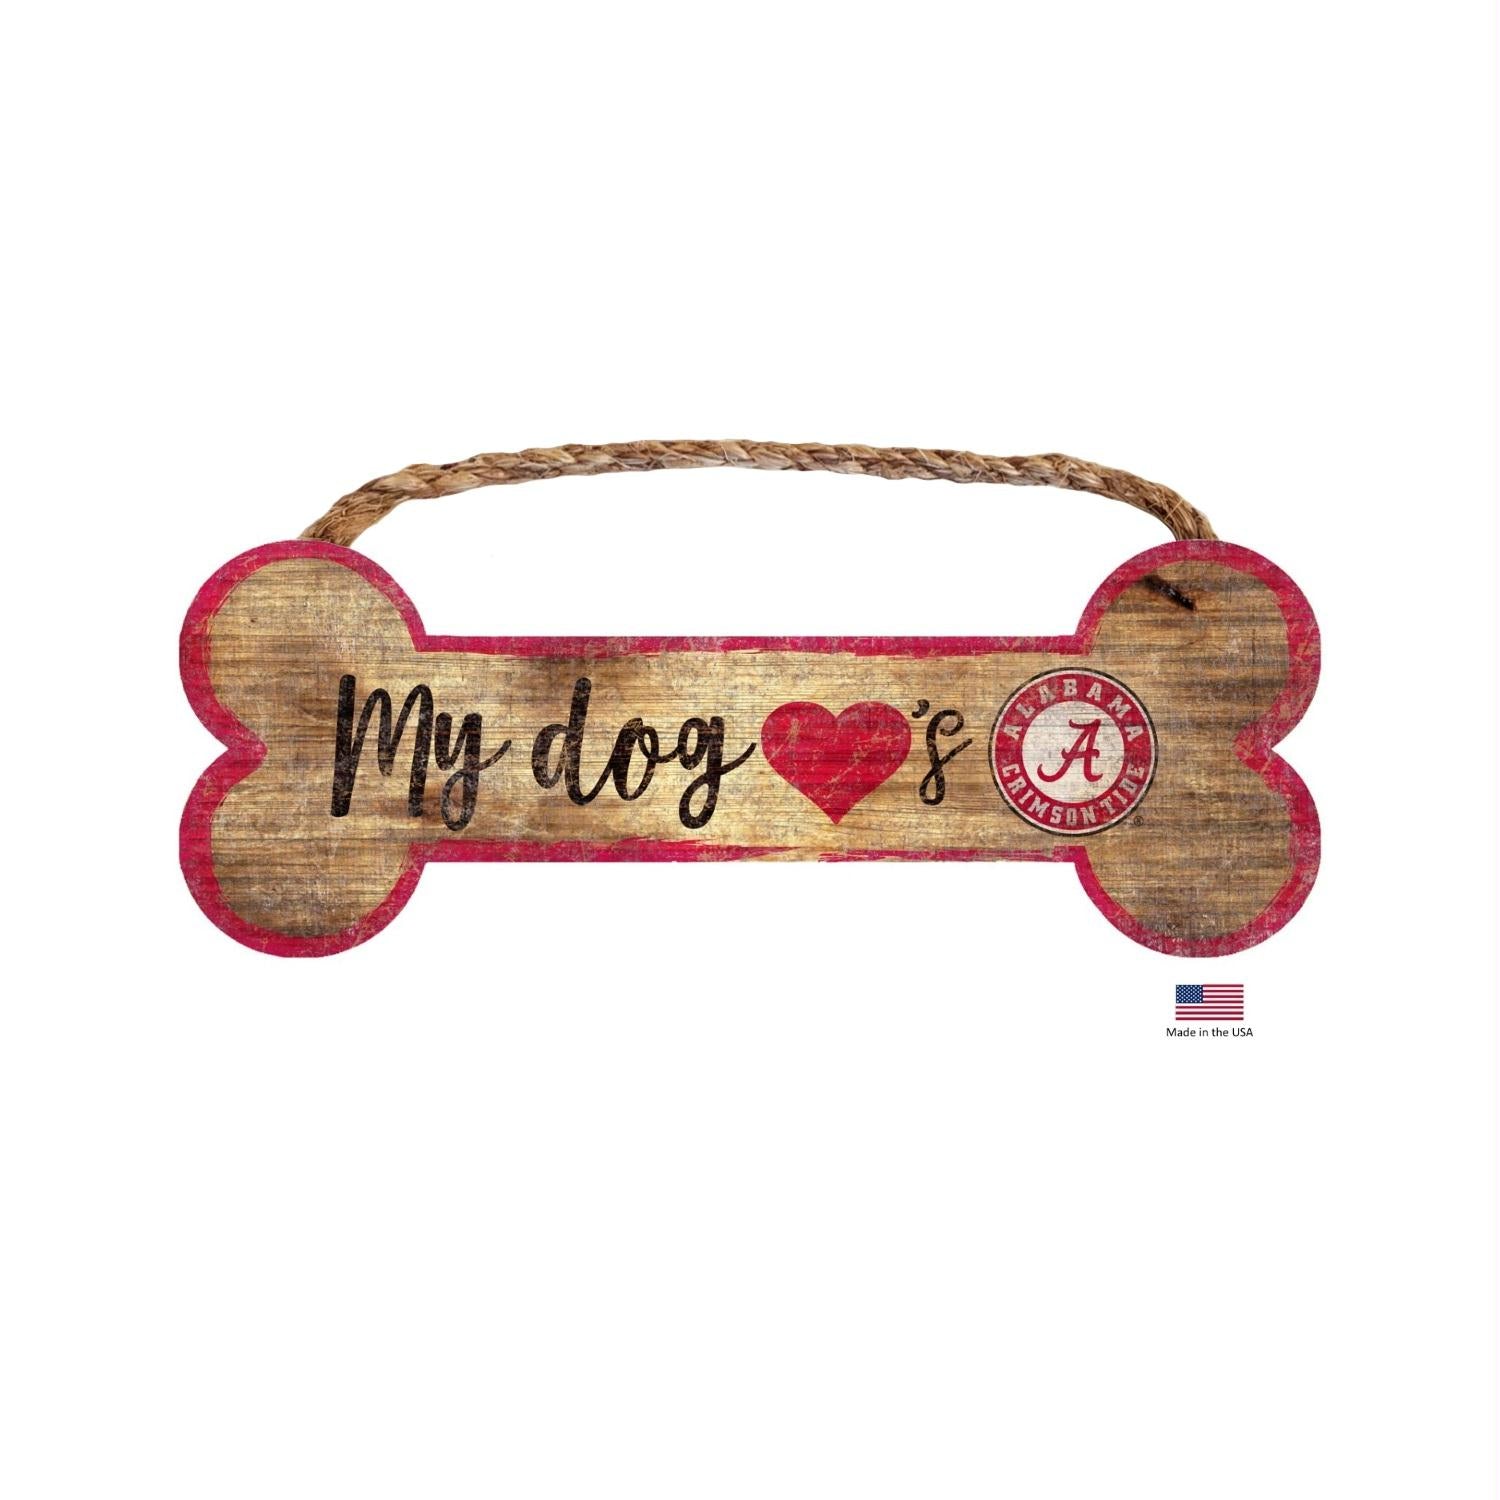 Alabama Crimson Tide Distressed Dog Bone Wooden Sign - Stay Golden Doodle